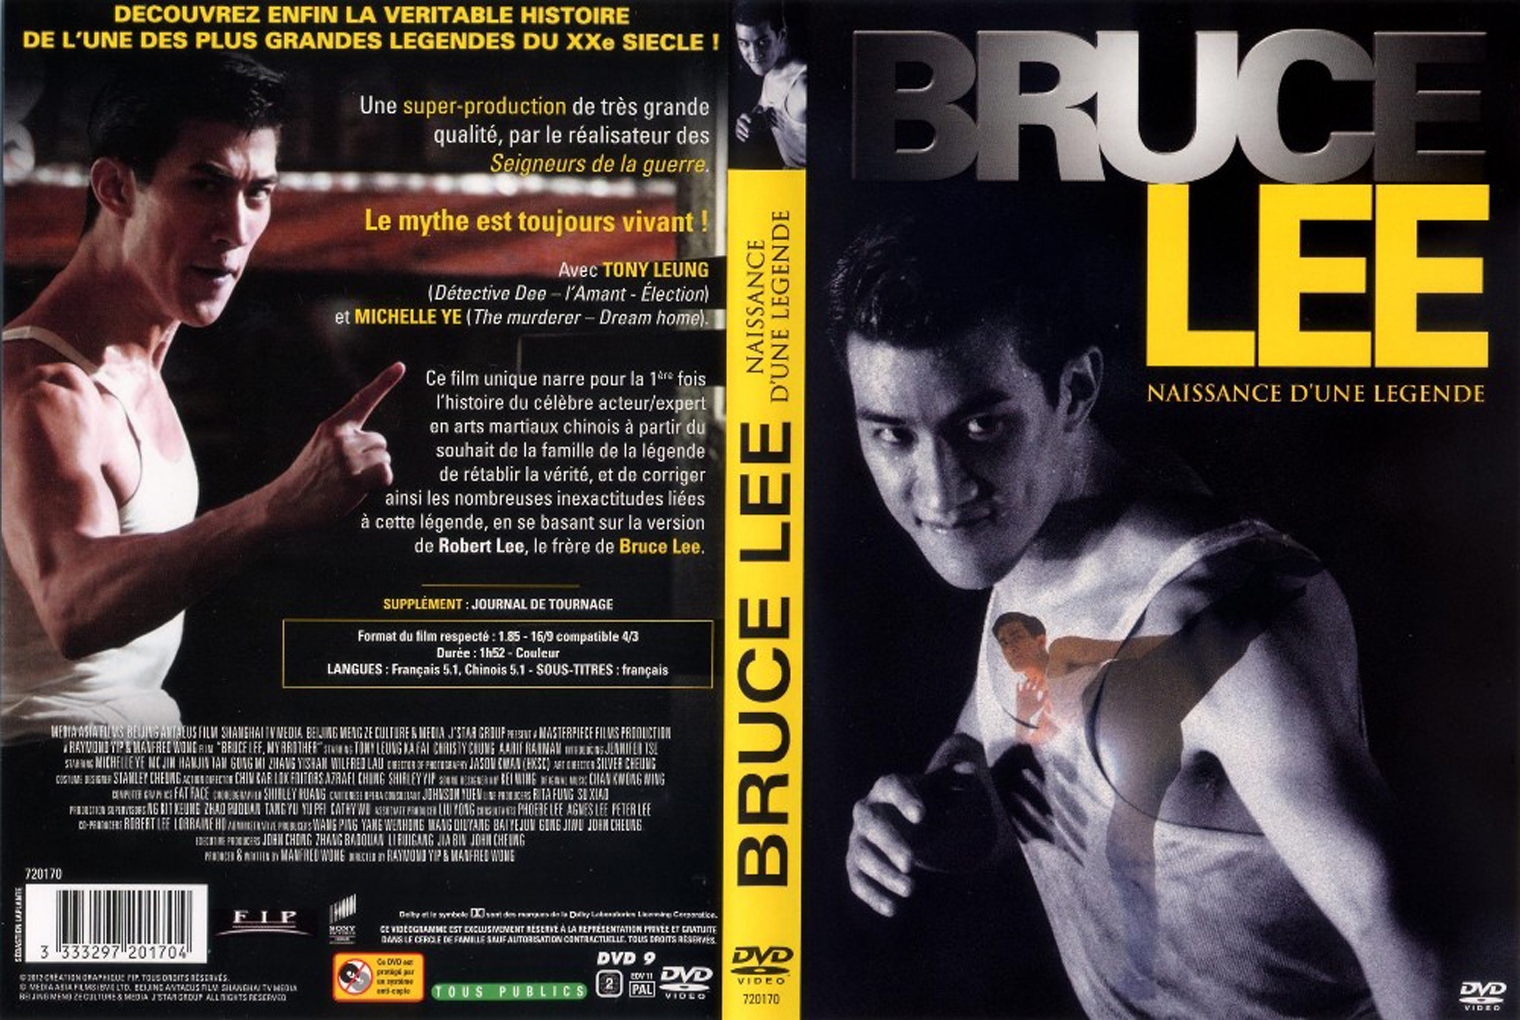 Jaquette DVD Bruce Lee Naissance d